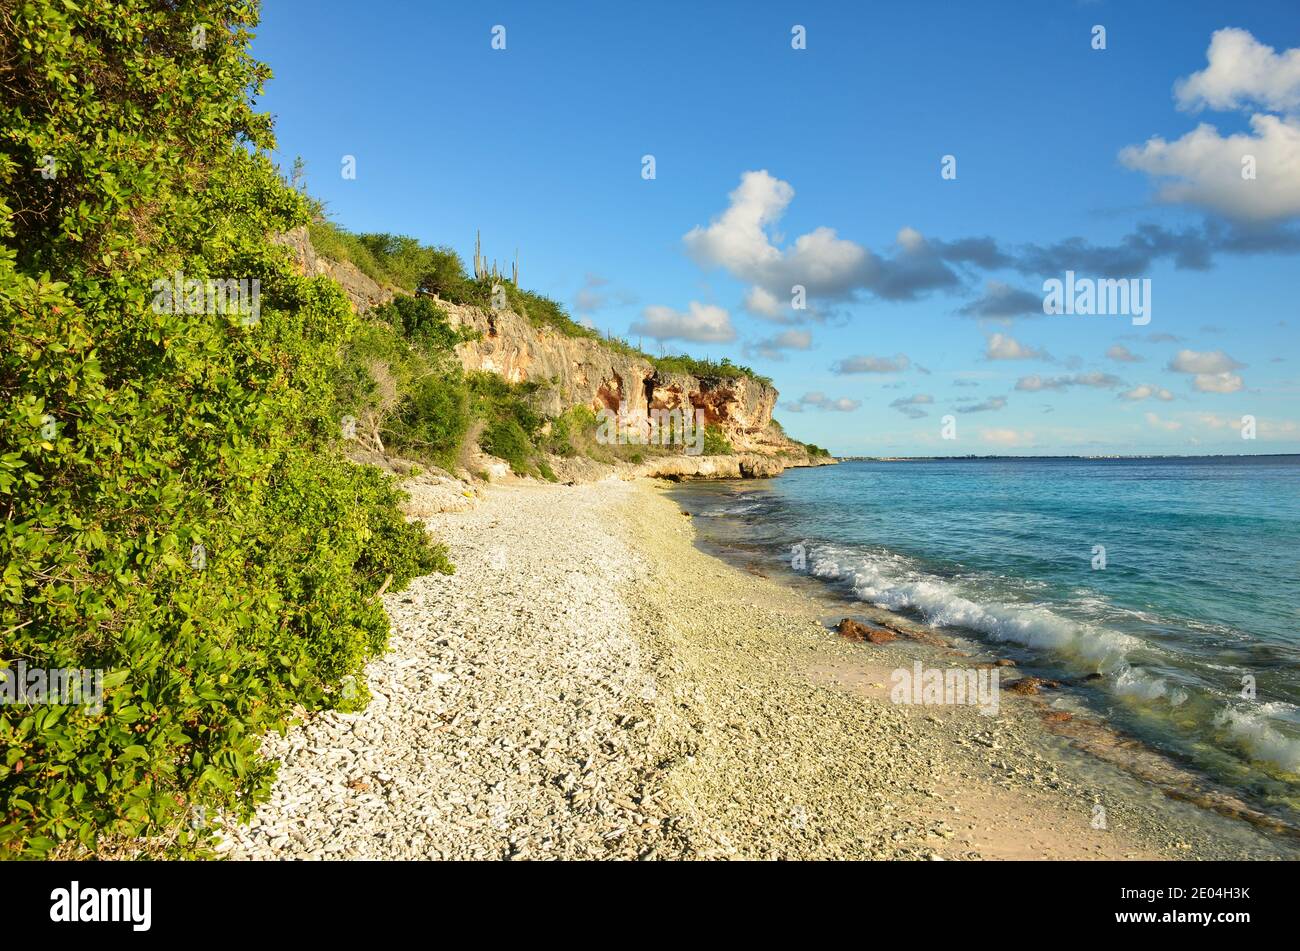 bellissima spiaggia sull'isola caraibica di bonaire, ottimo luogo per fare snorkeling e immersioni sull'isola. godetevi il relax nella sabbia vicino al mare Foto Stock